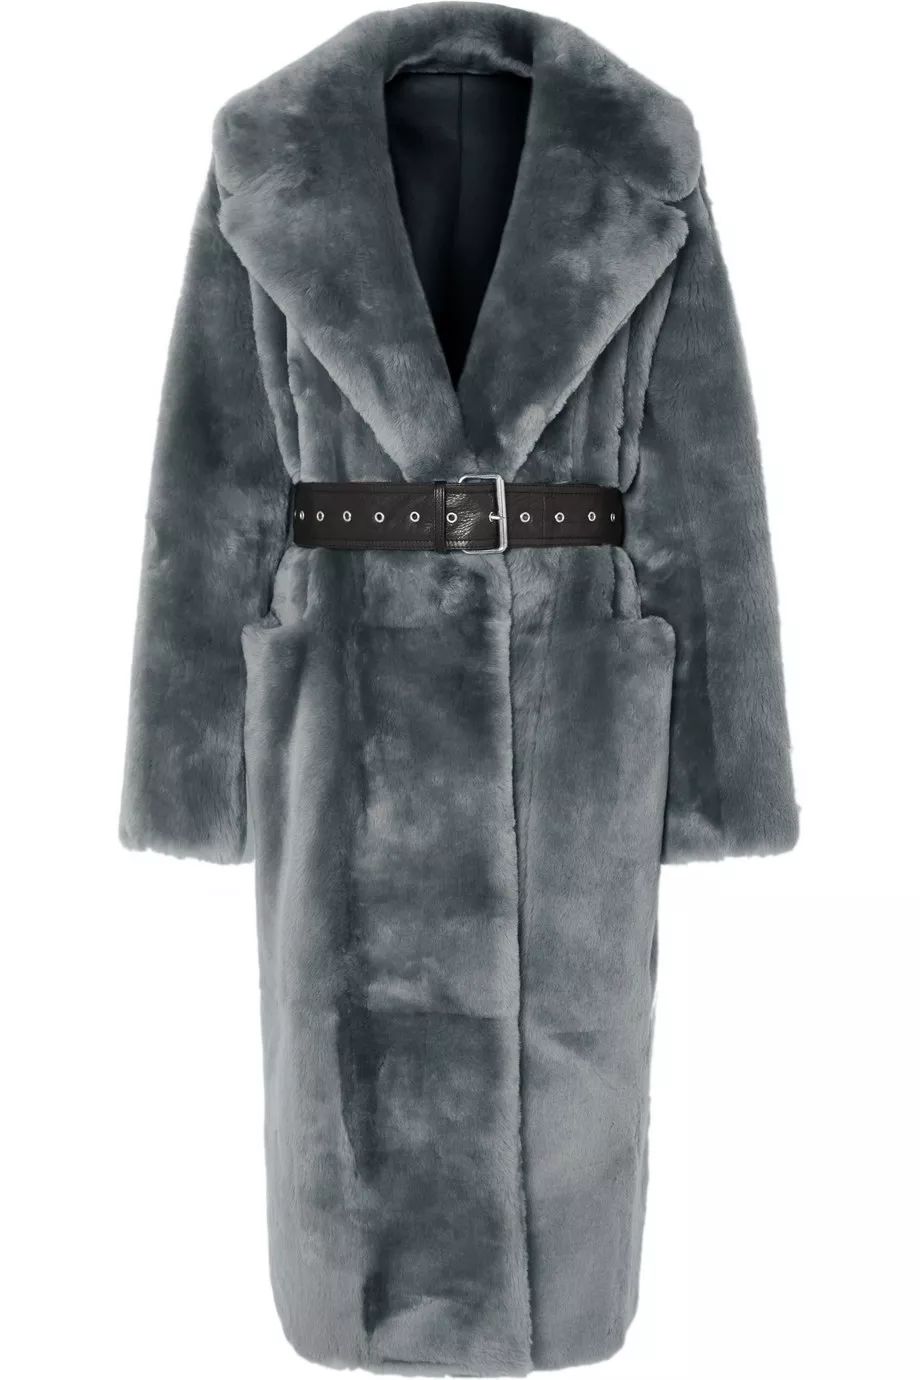 芭莎時裝組出鏡，為你挑選秋冬最值的大衣！ 時尚 第34張